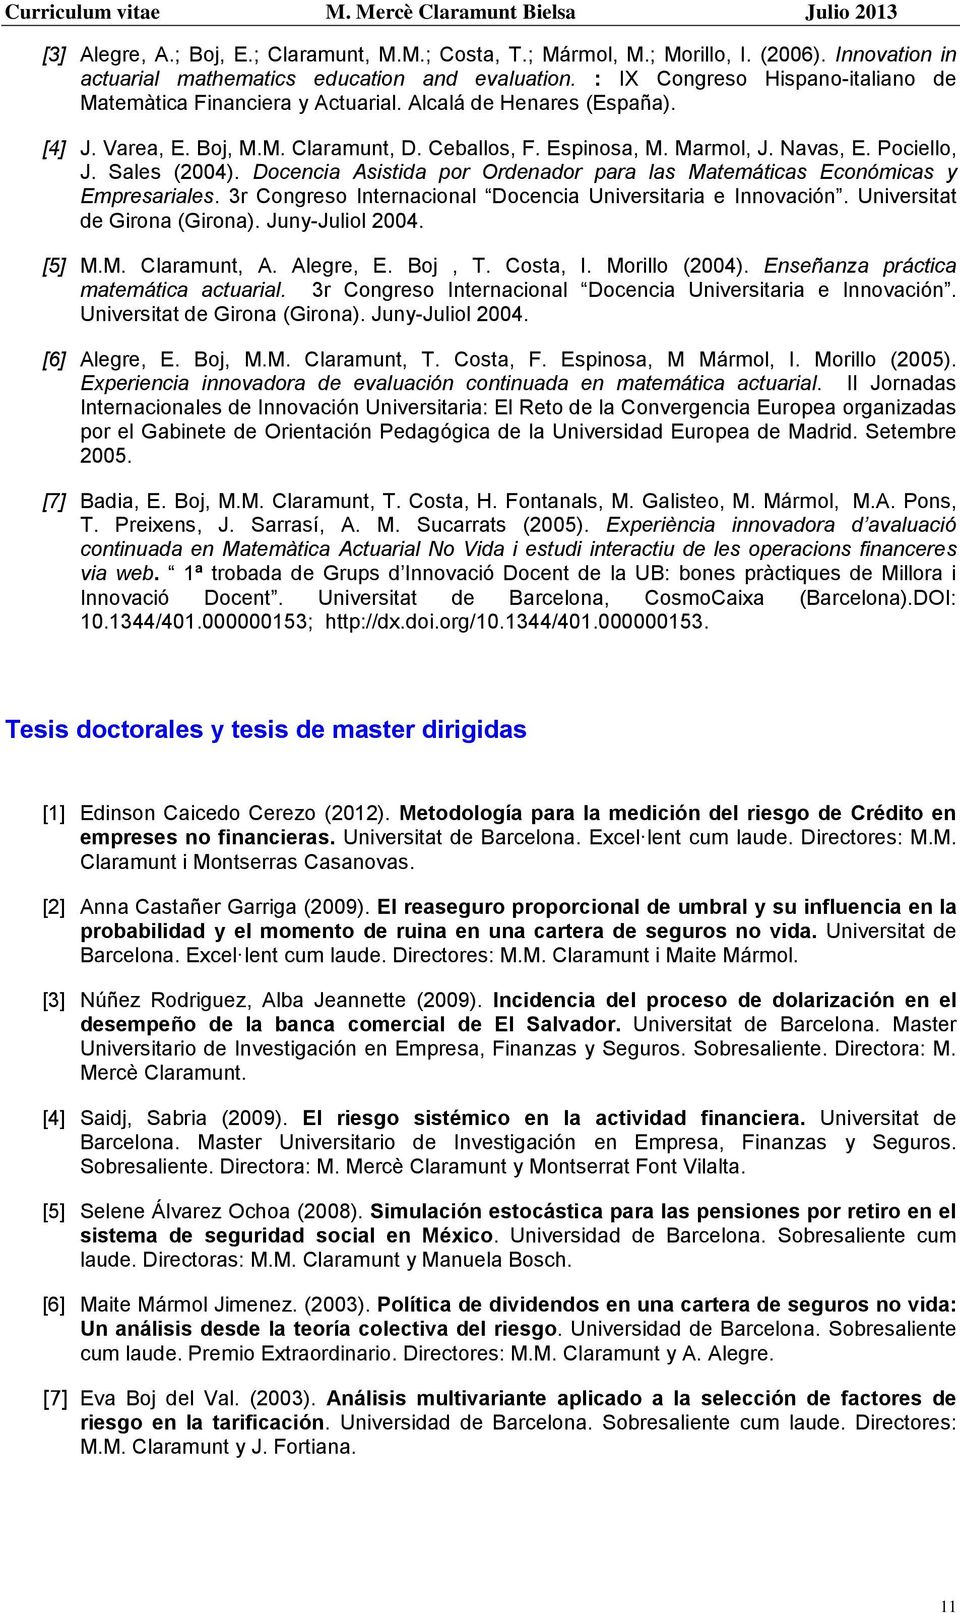 Sales (2004). Docencia Asistida por Ordenador para las Matemáticas Económicas y Empresariales. 3r Congreso Internacional Docencia Universitaria e Innovación. Universitat de Girona (Girona).